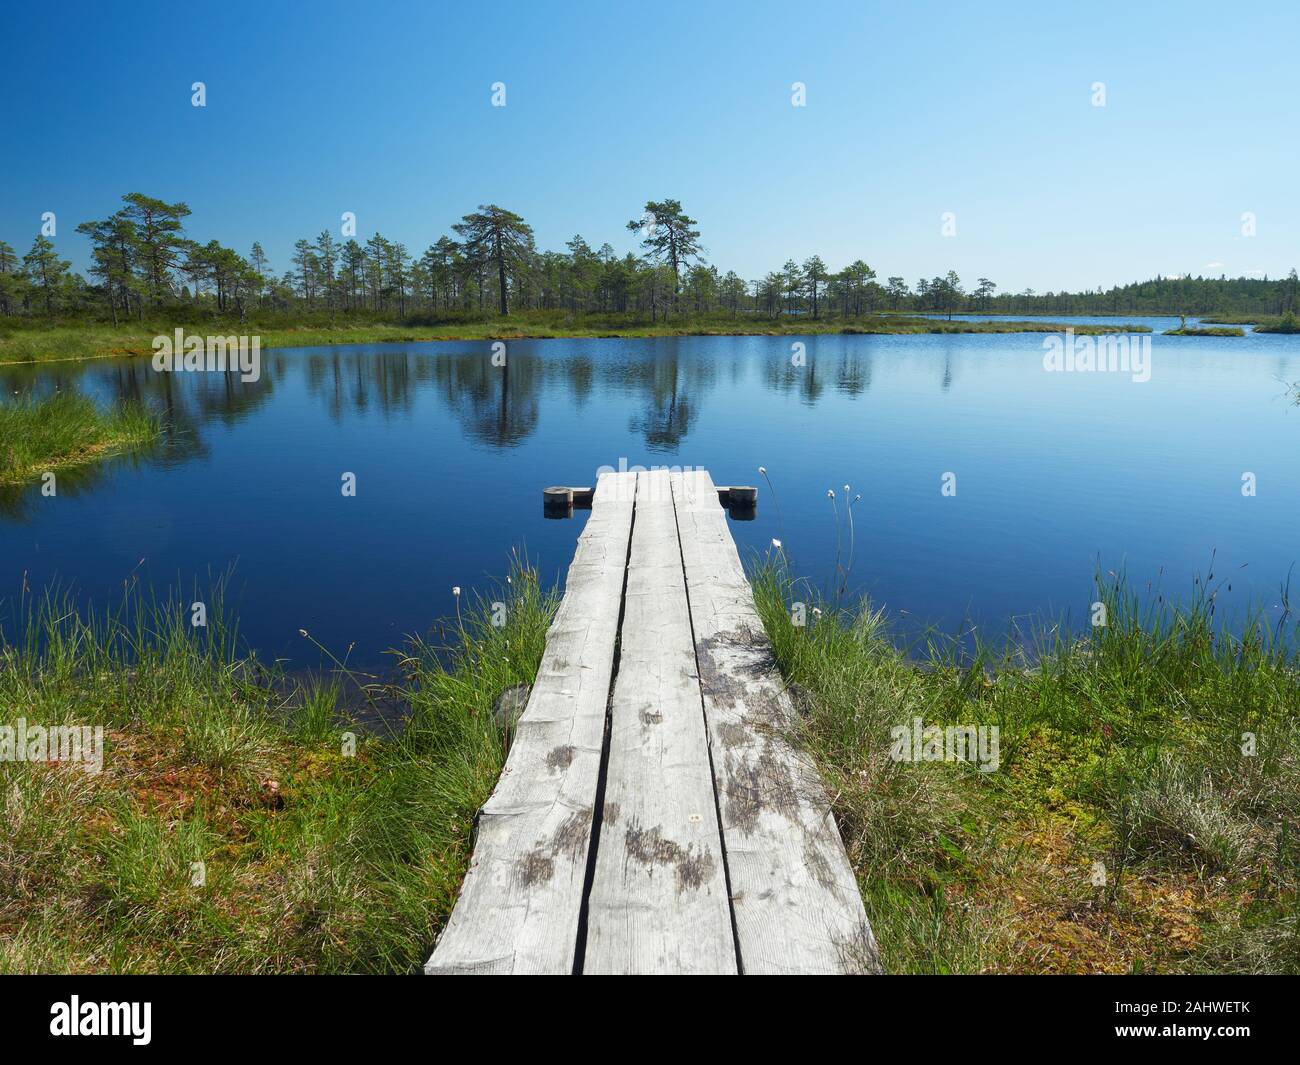 Petit lac sur une chaude journée d'été. Paysage du nord du parc national de Kauhaneva-Pohjankangas en Finlande. Banque D'Images